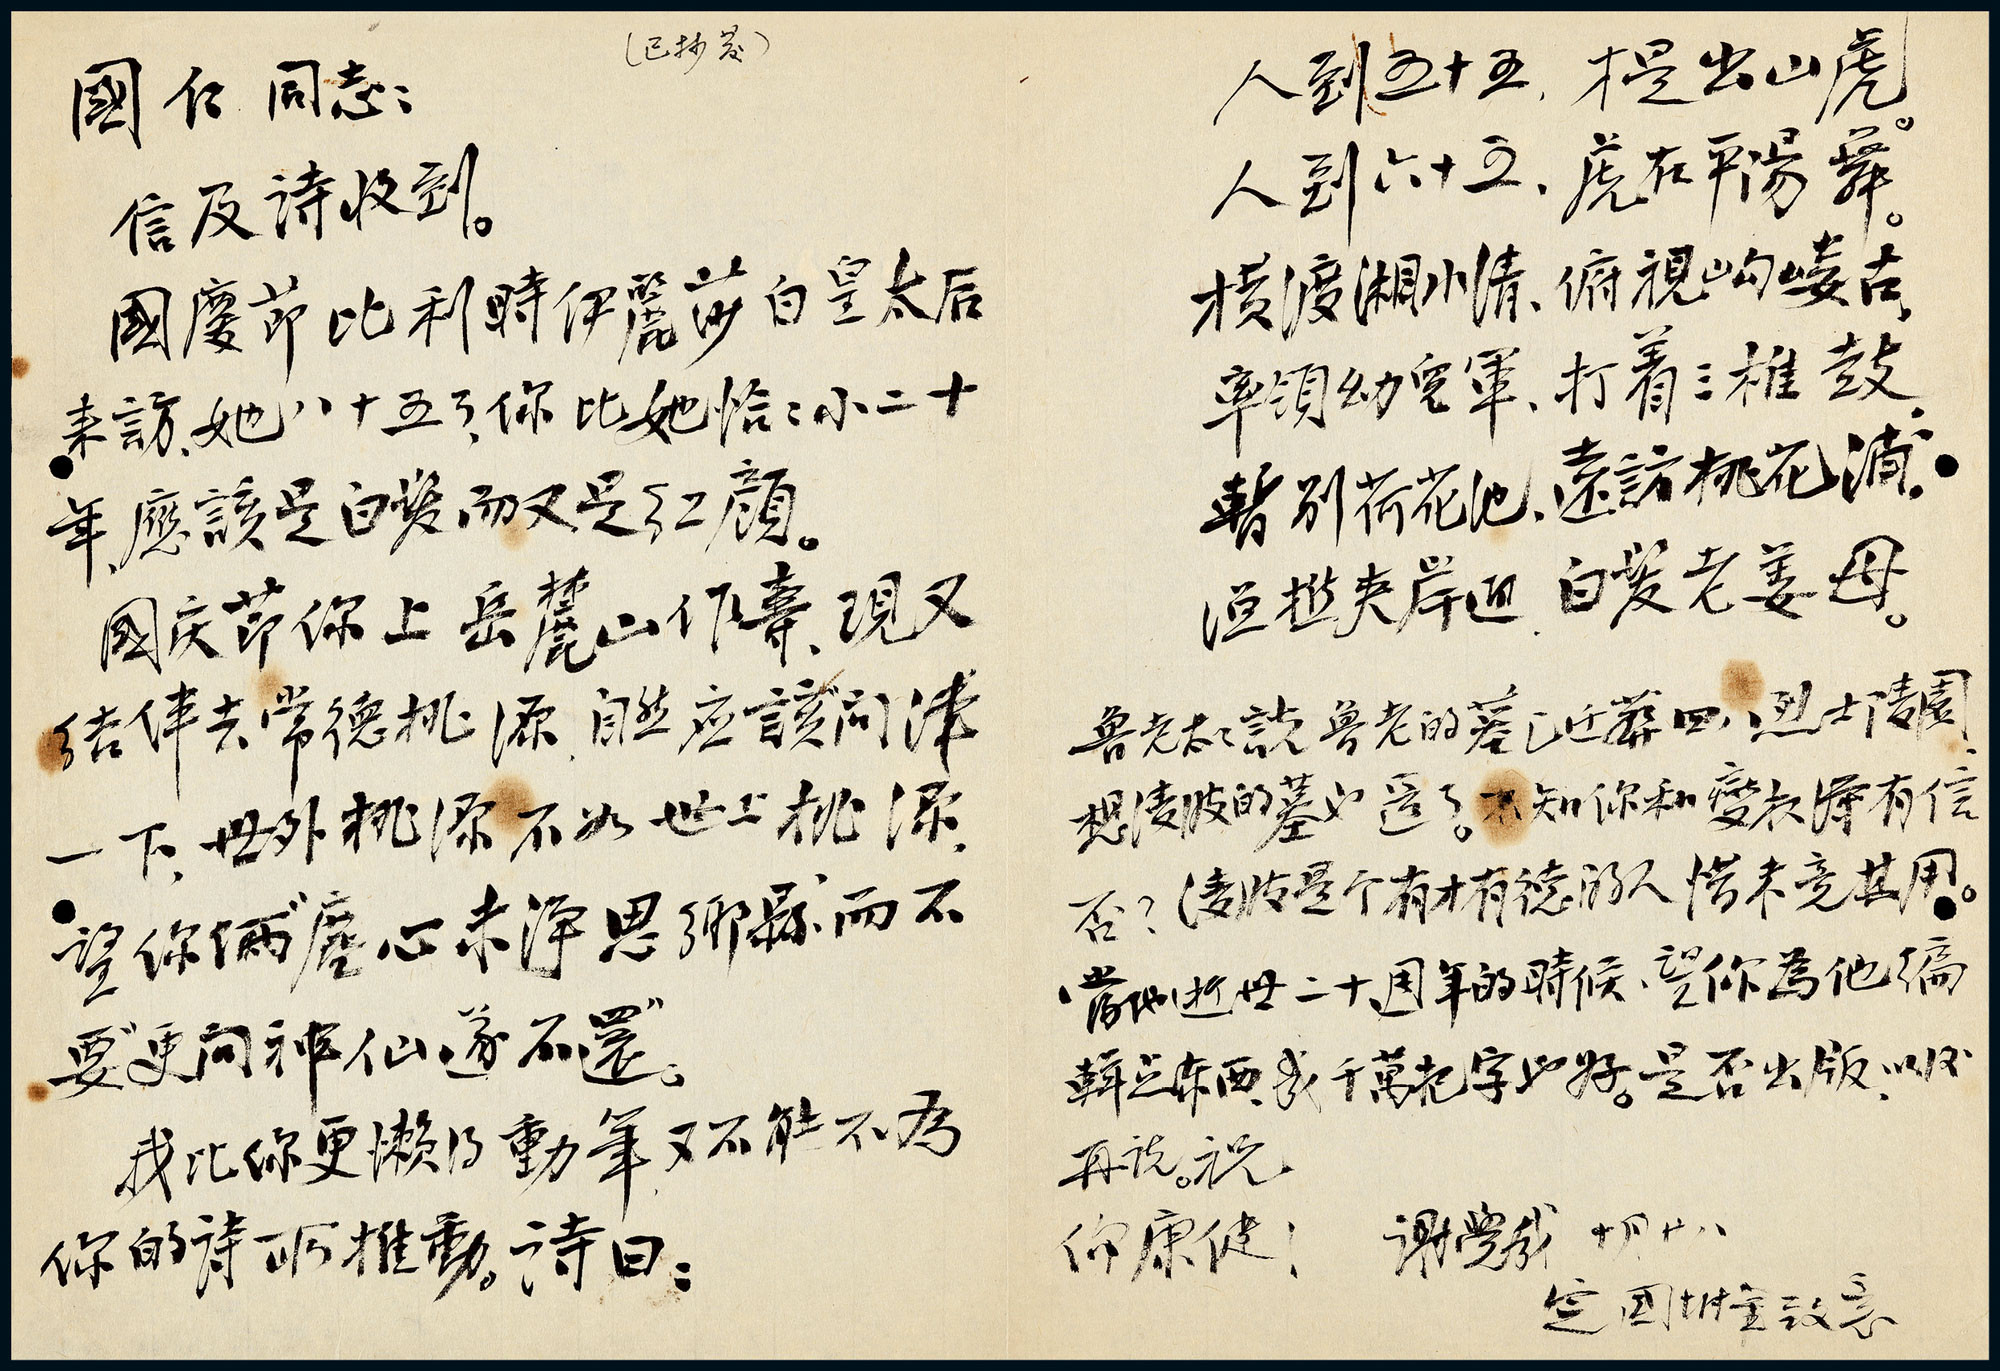 A letter from Xie Juezai to Jiang Guoren